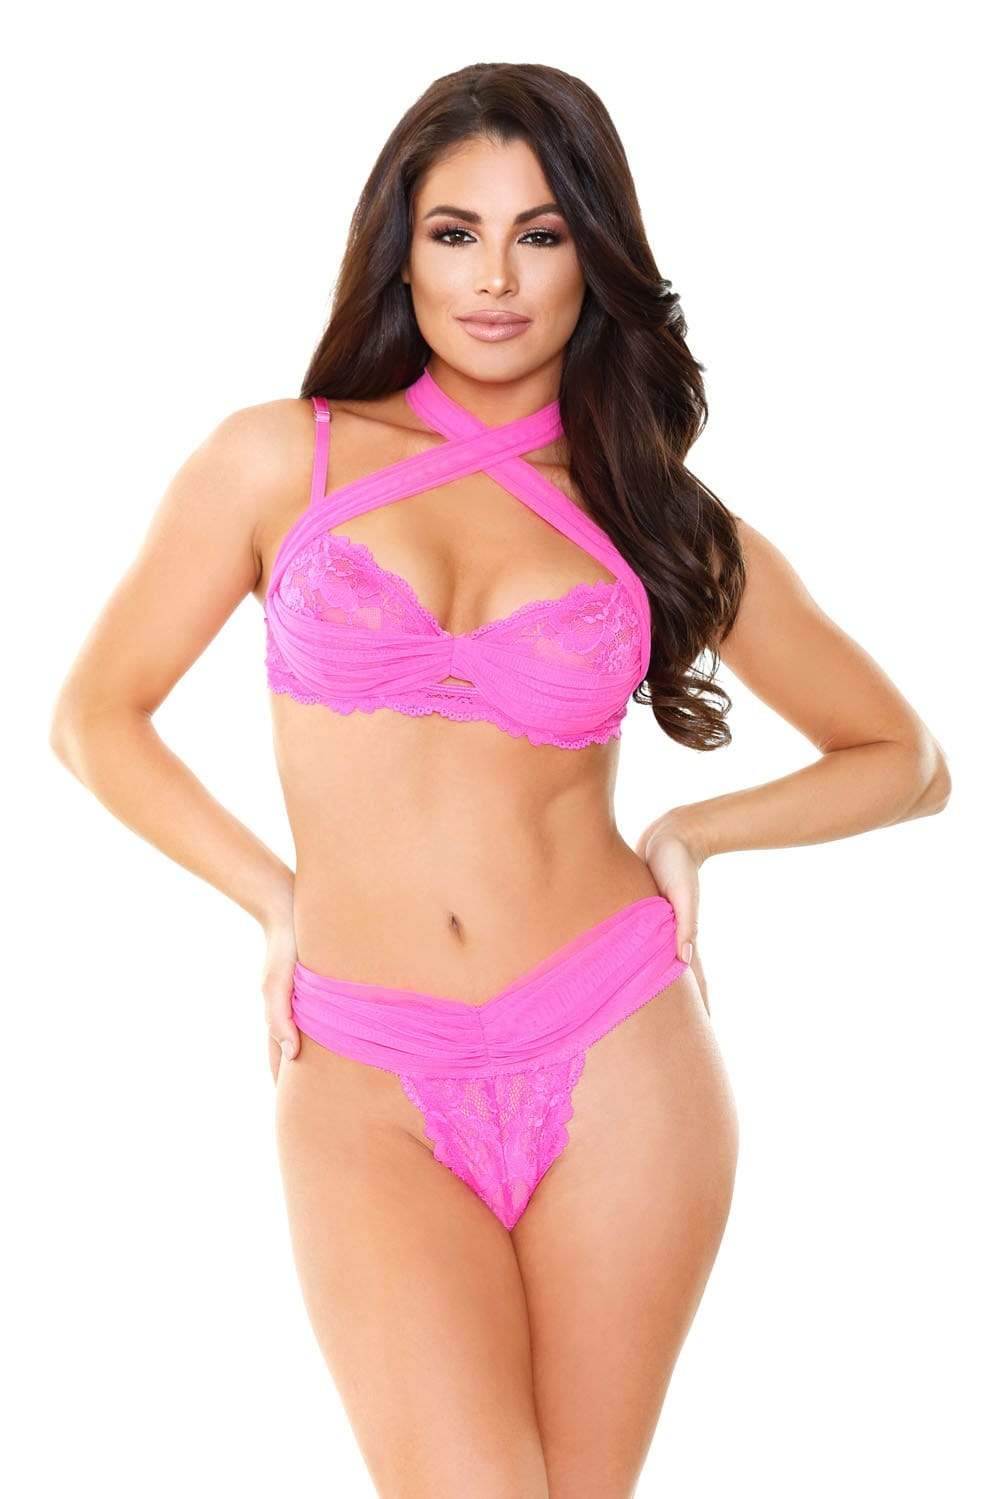 farah strappy bra top panty shocking pink medium large